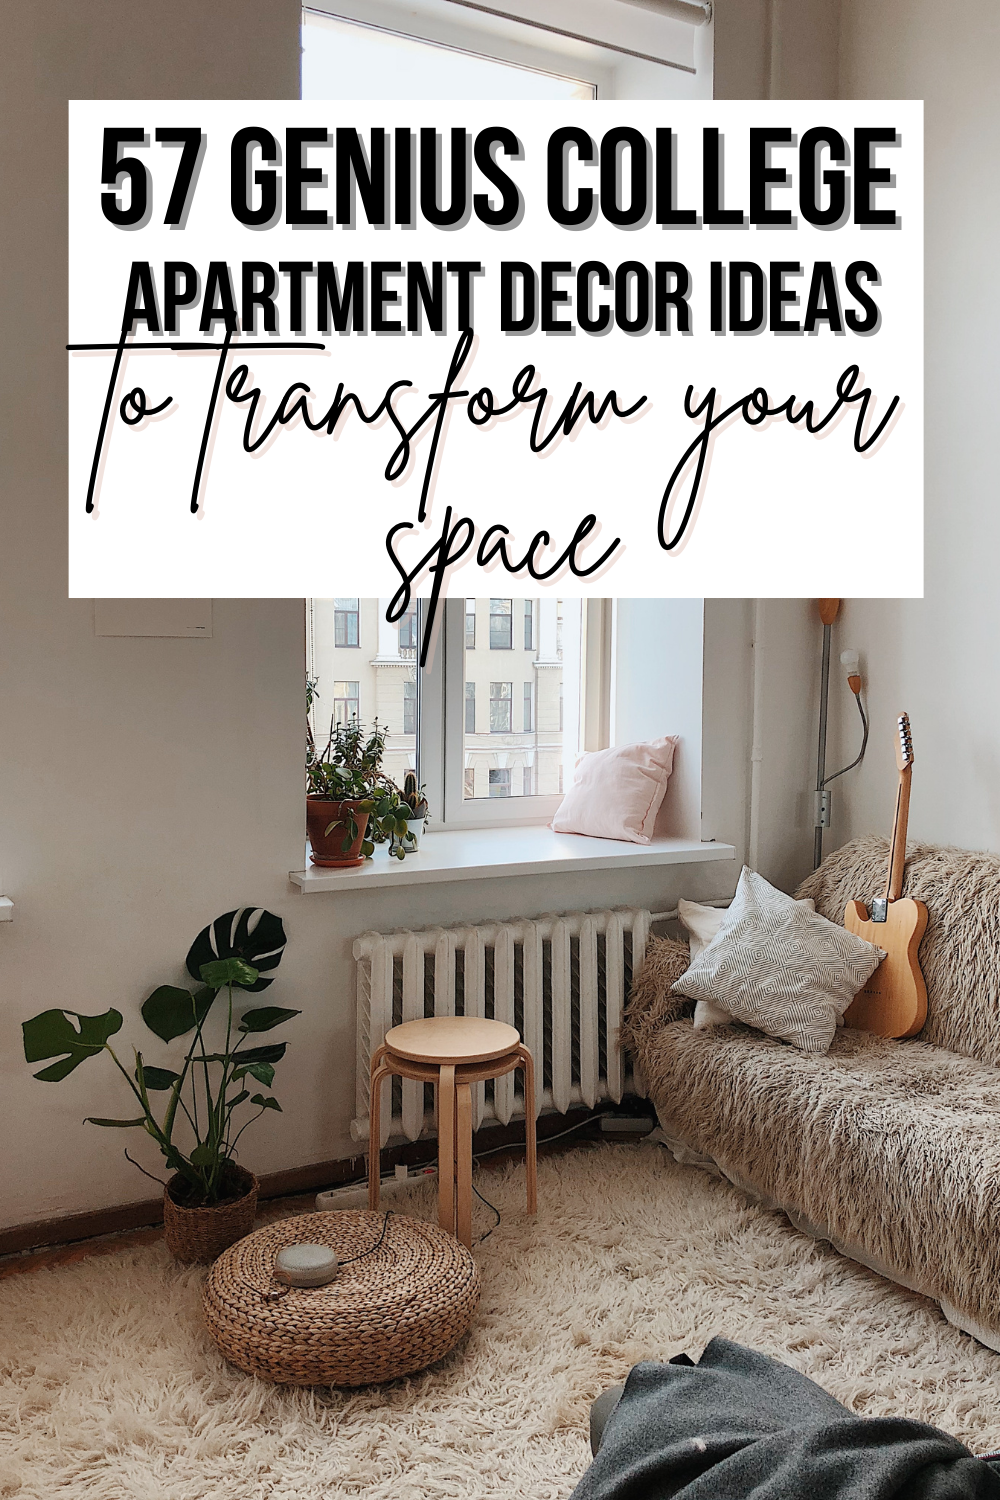 18 Genius College Apartment Decor Ideas for a Stunning Apartment ...